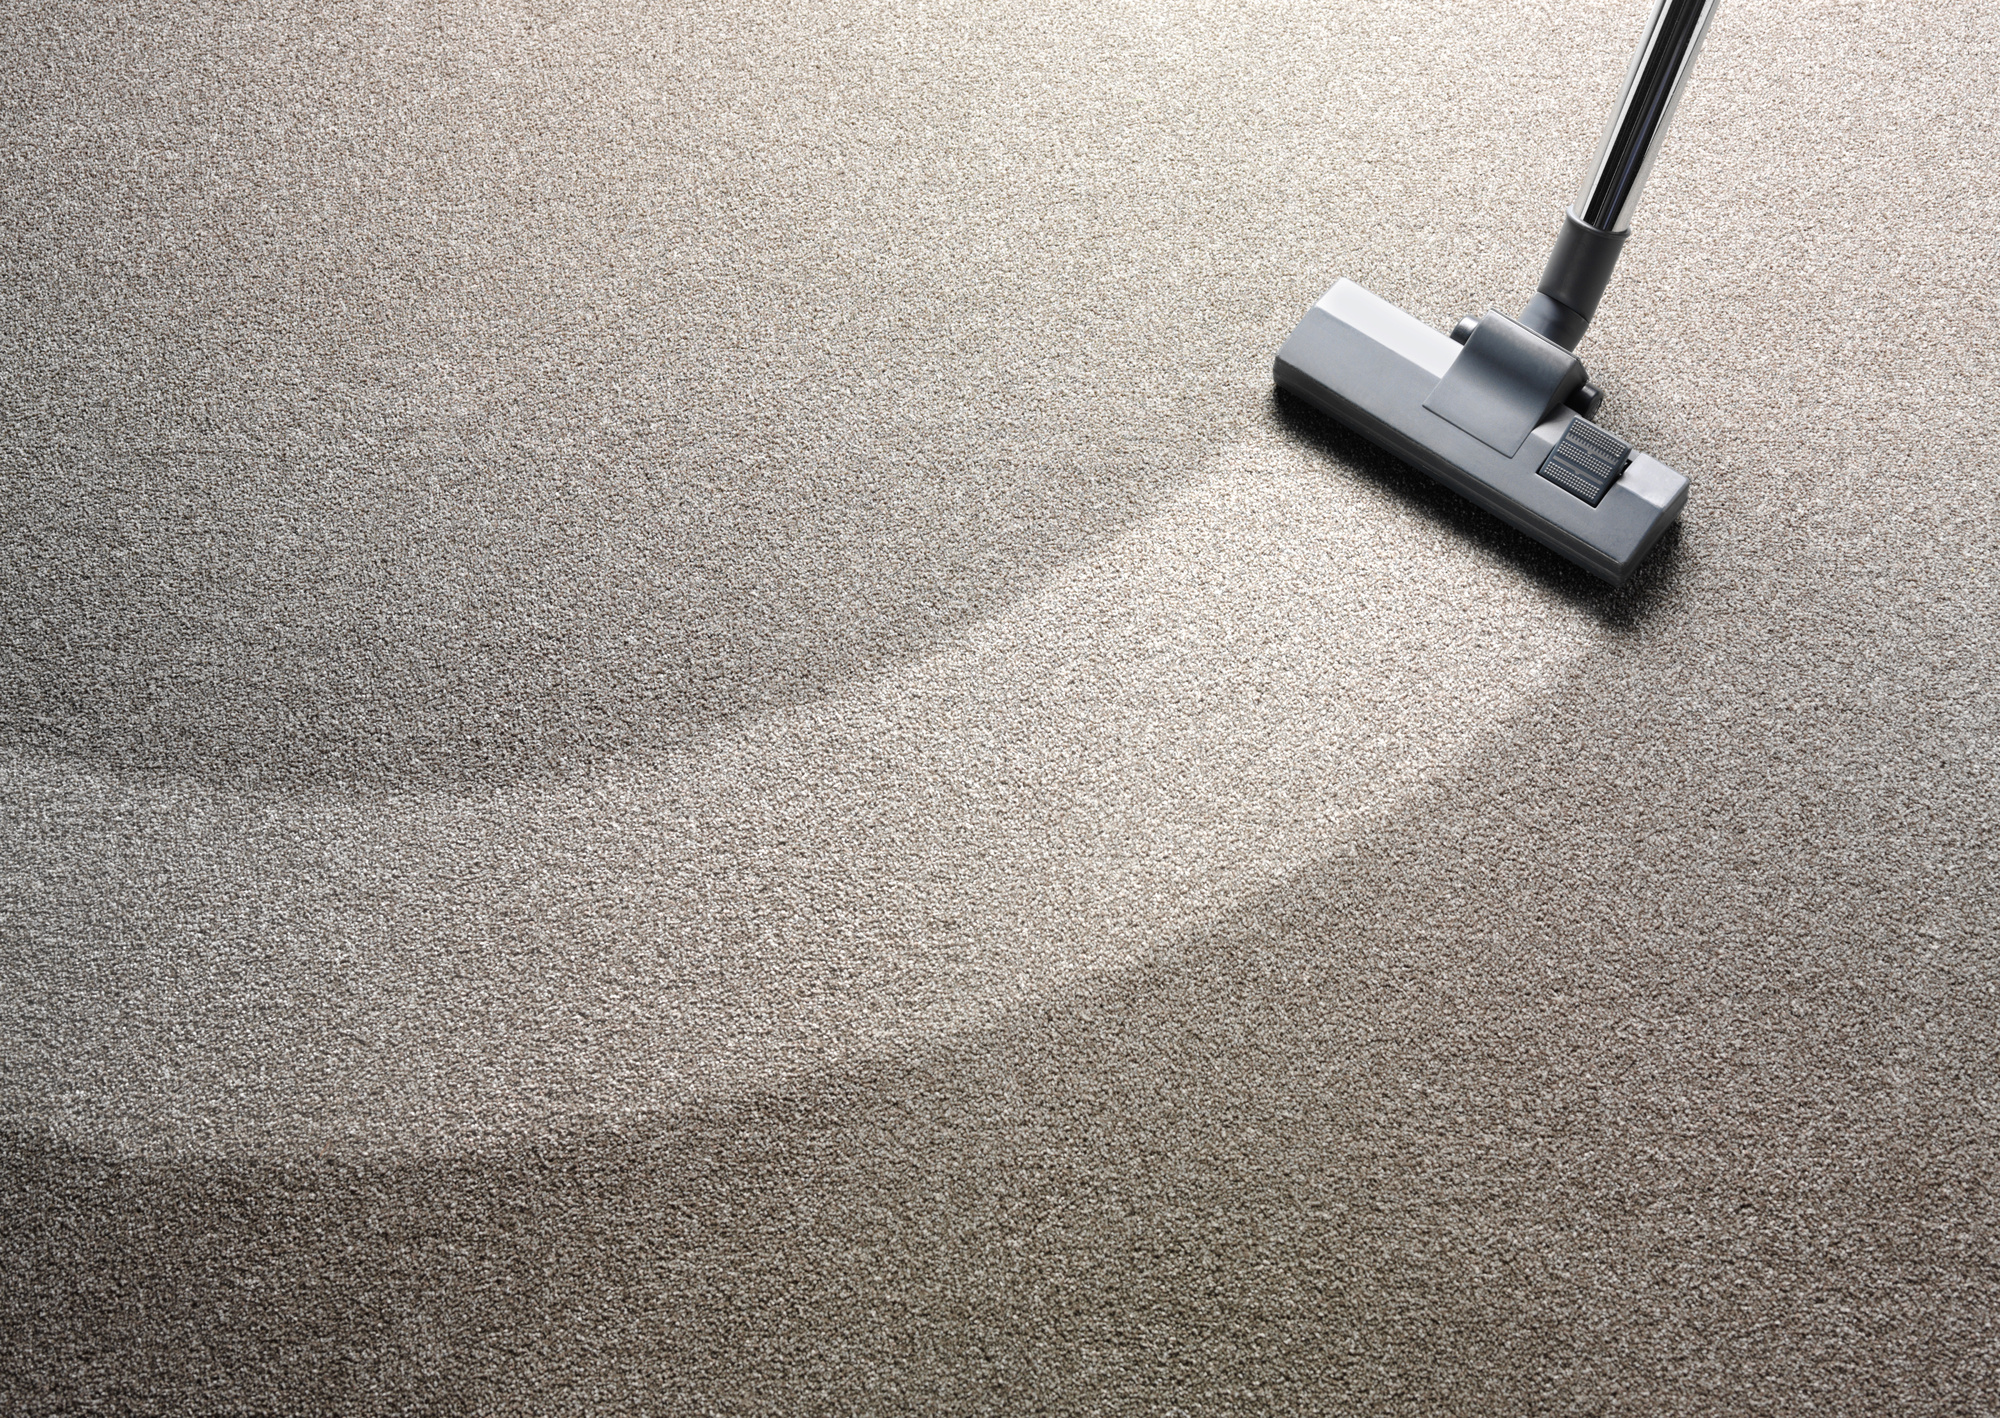 how to deodorize carpet